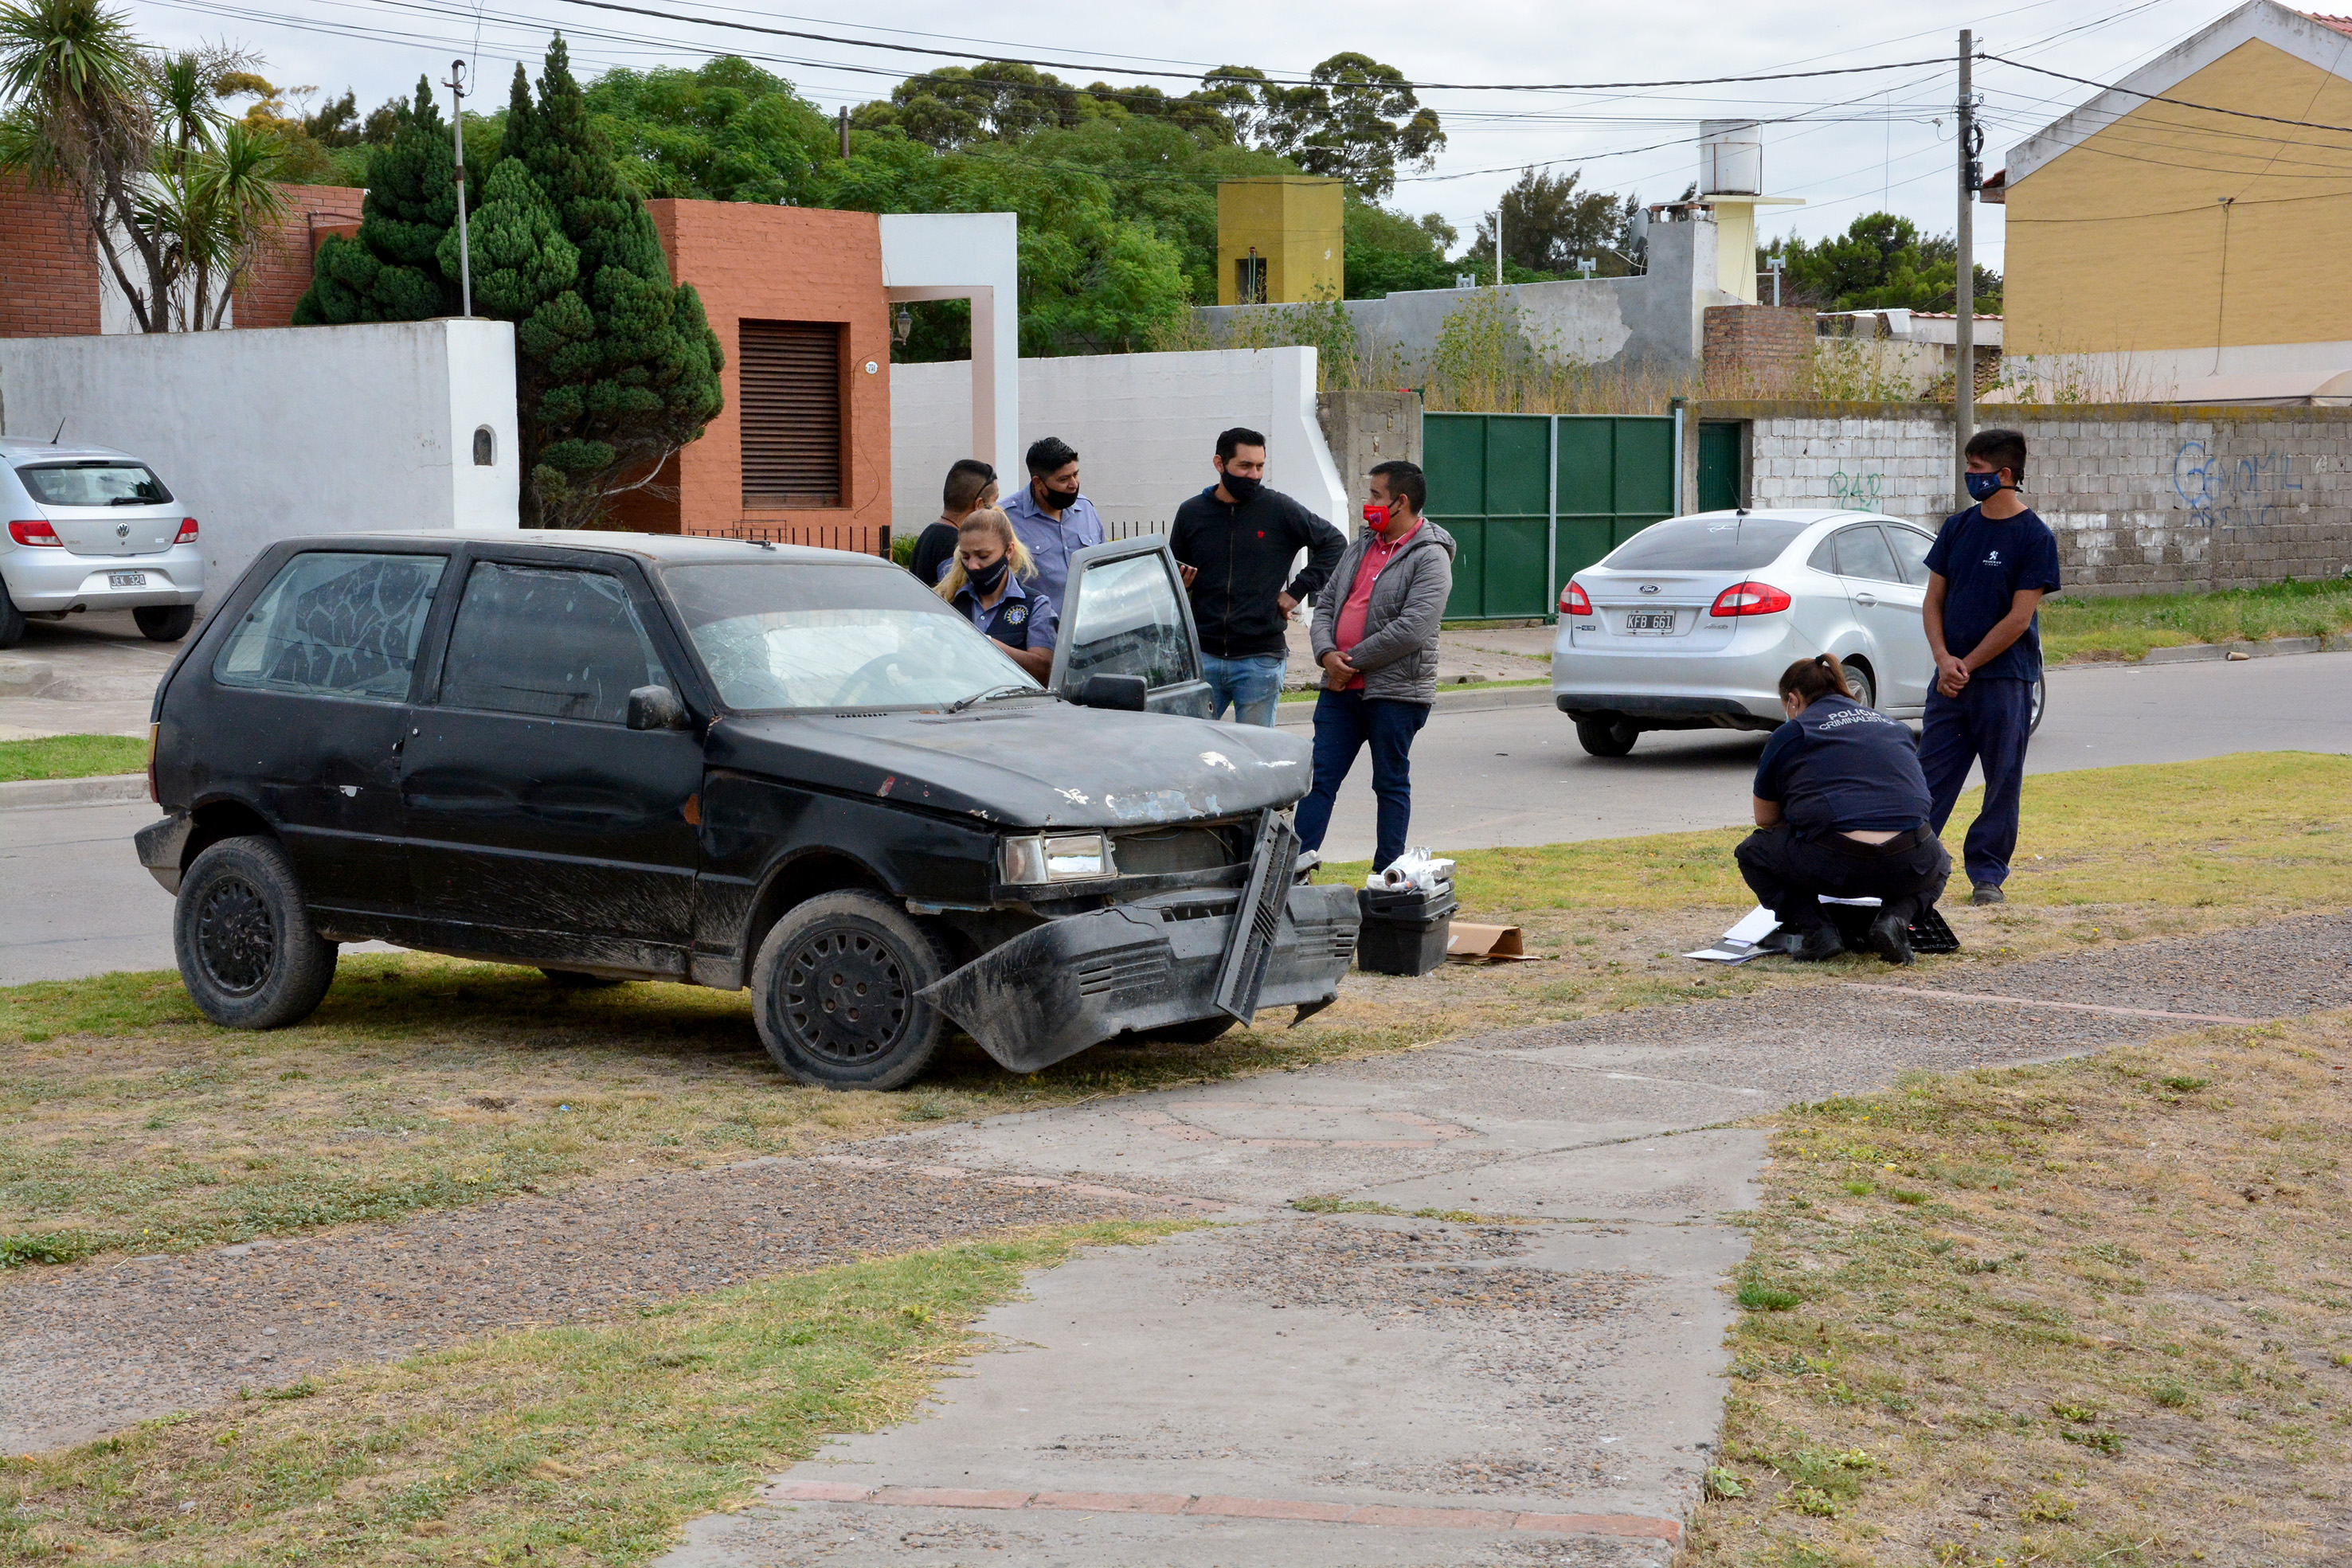 El Fiat Uno utilizado durante el robo de esta mañana. Foto: Marcelo Ochoa